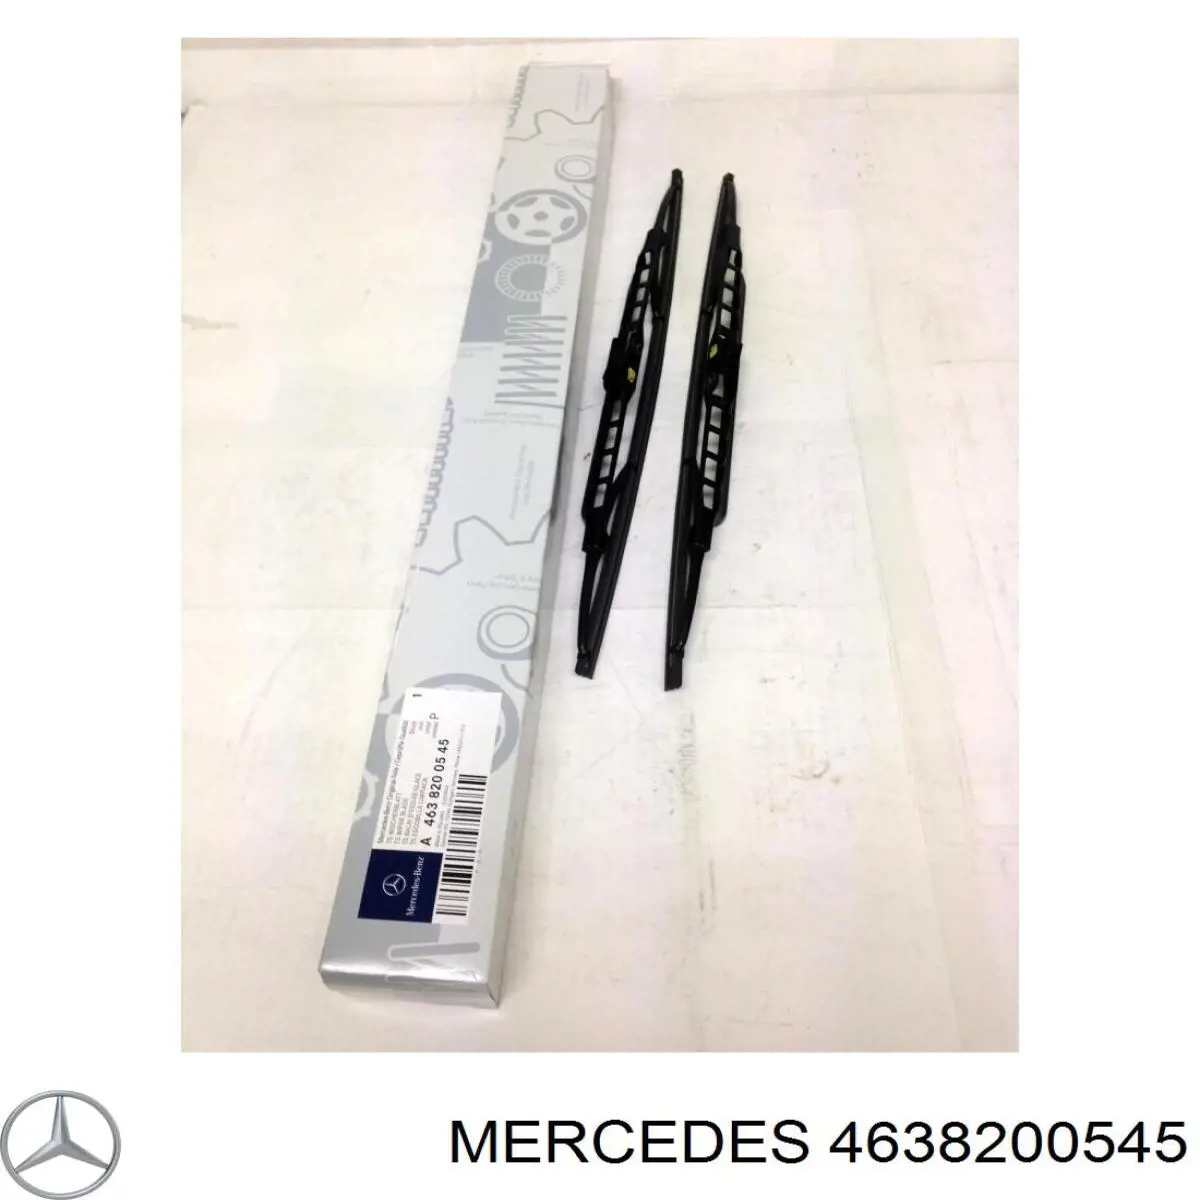 A4638200145 Mercedes щетка-дворник лобового стекла, комплект из 2 шт.